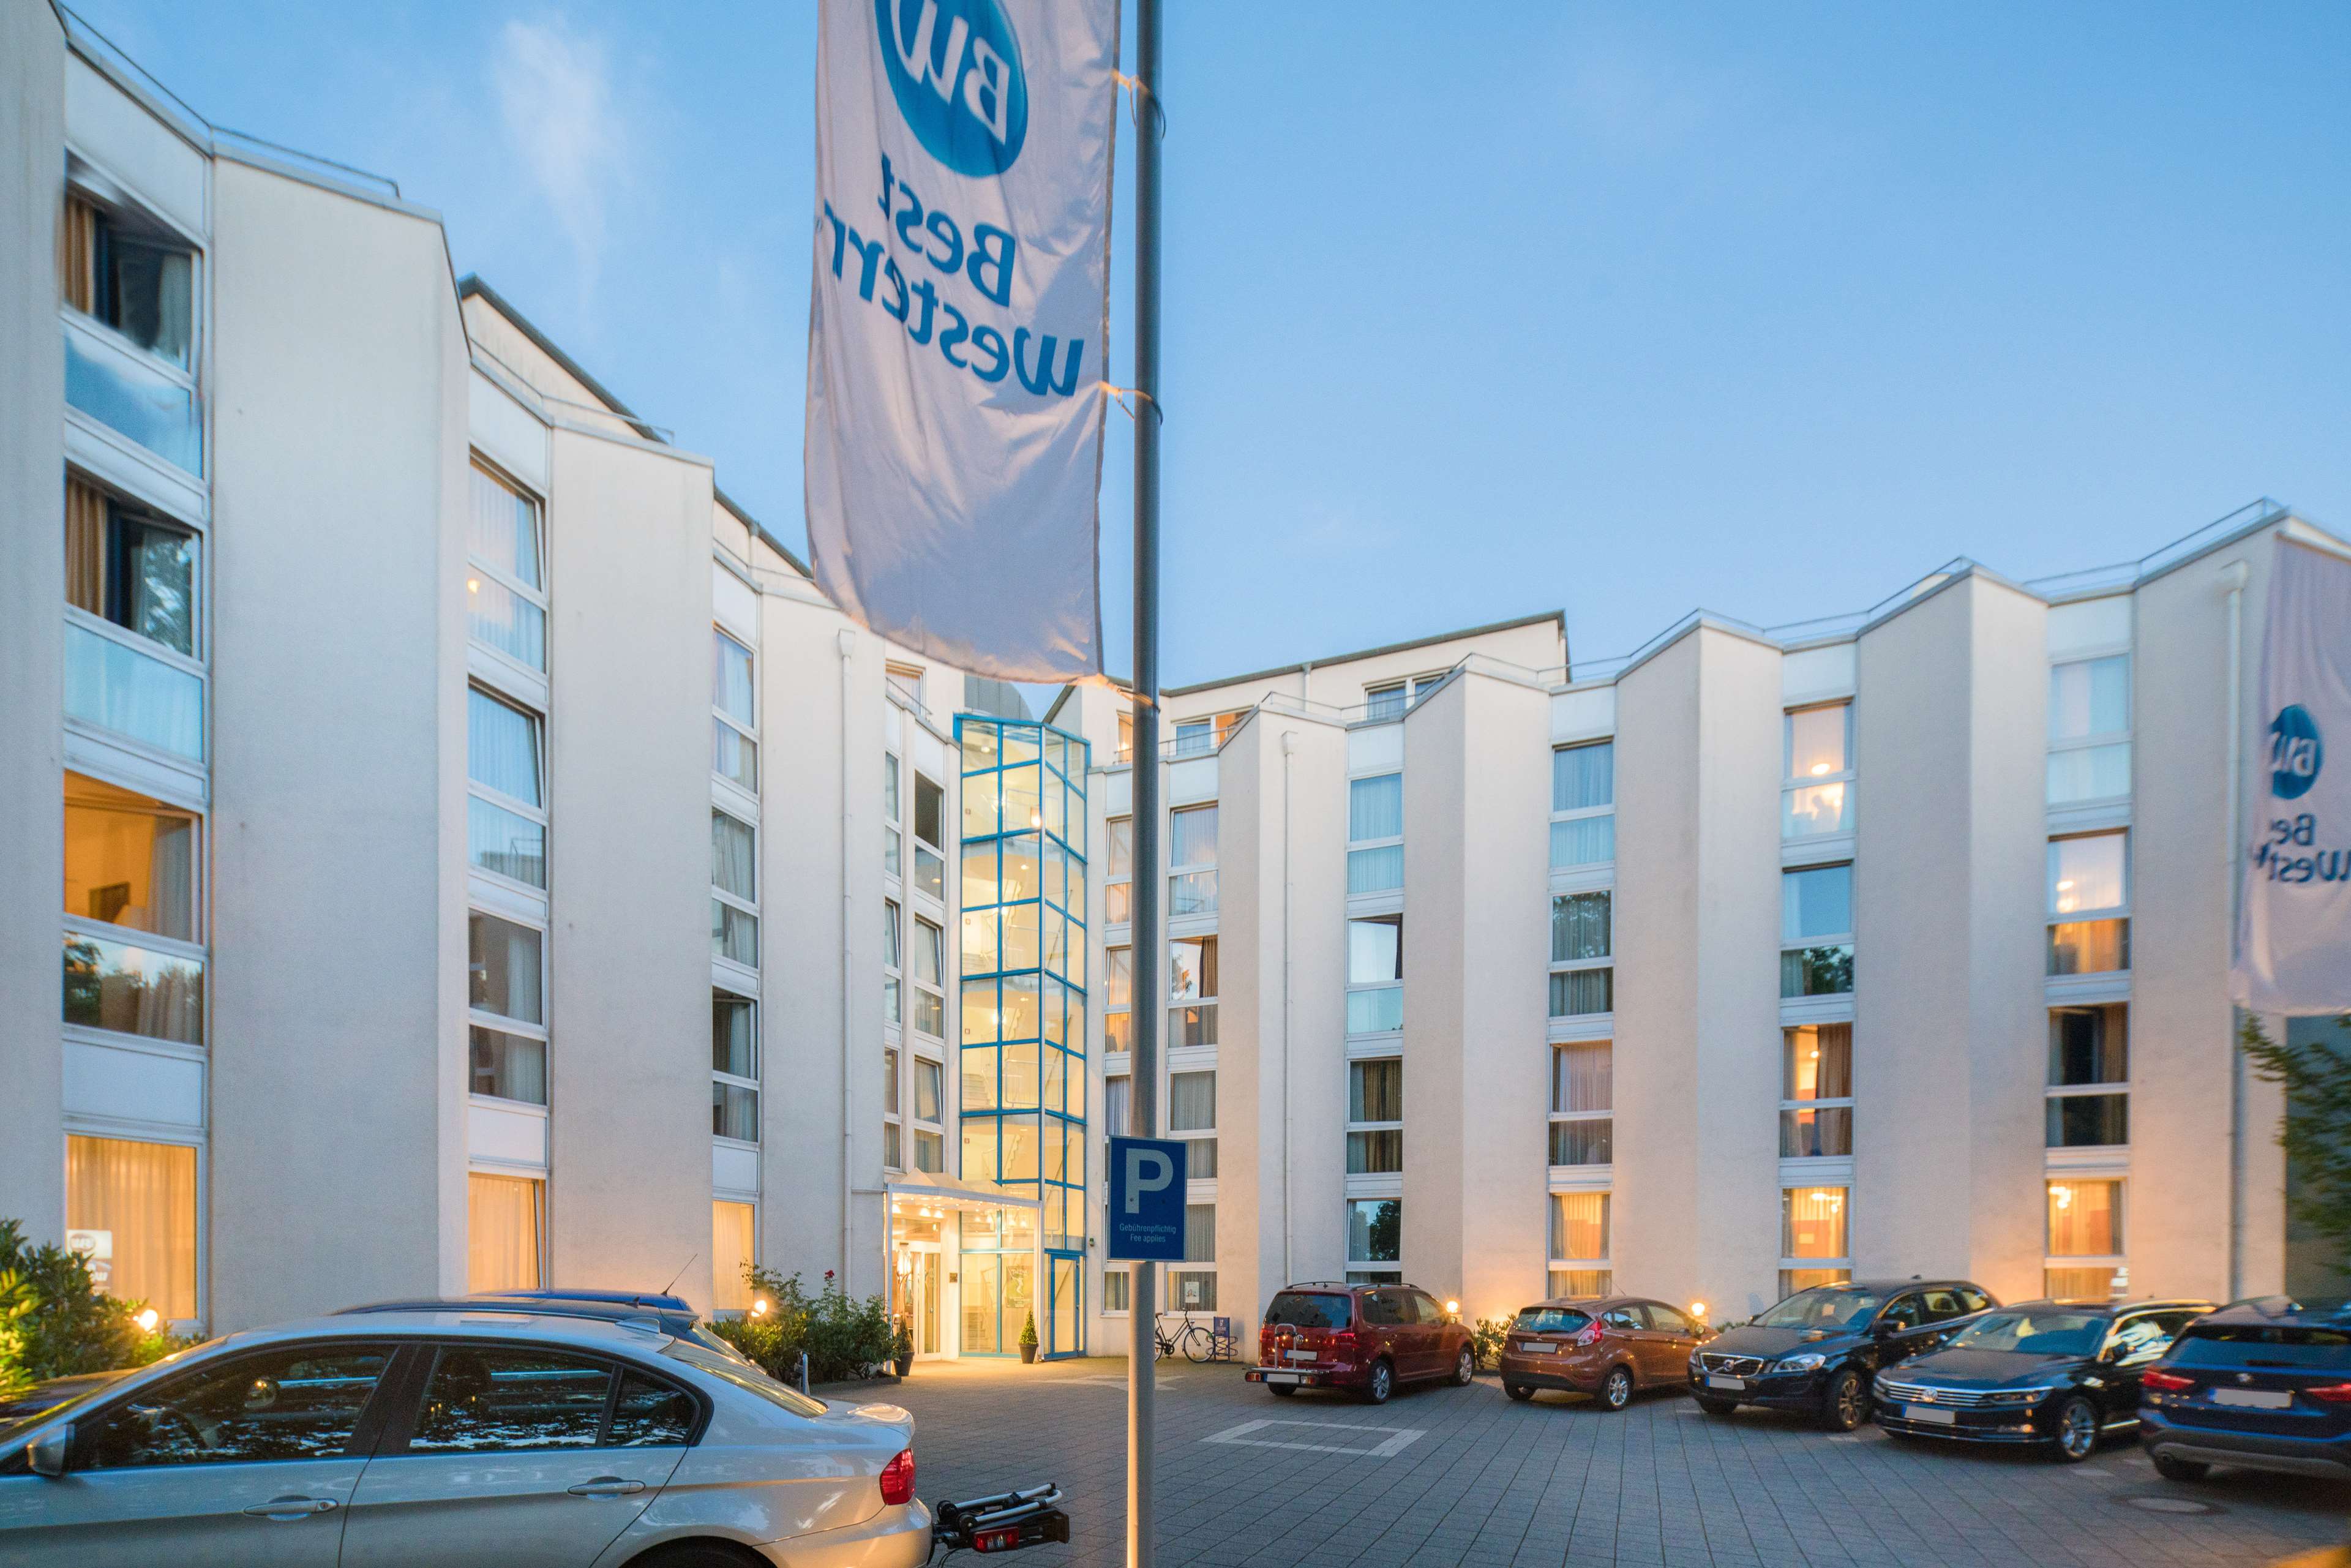 Best Western Hotel Ypsilon, Mueller-Breslau-Strasse 18-20 in Essen